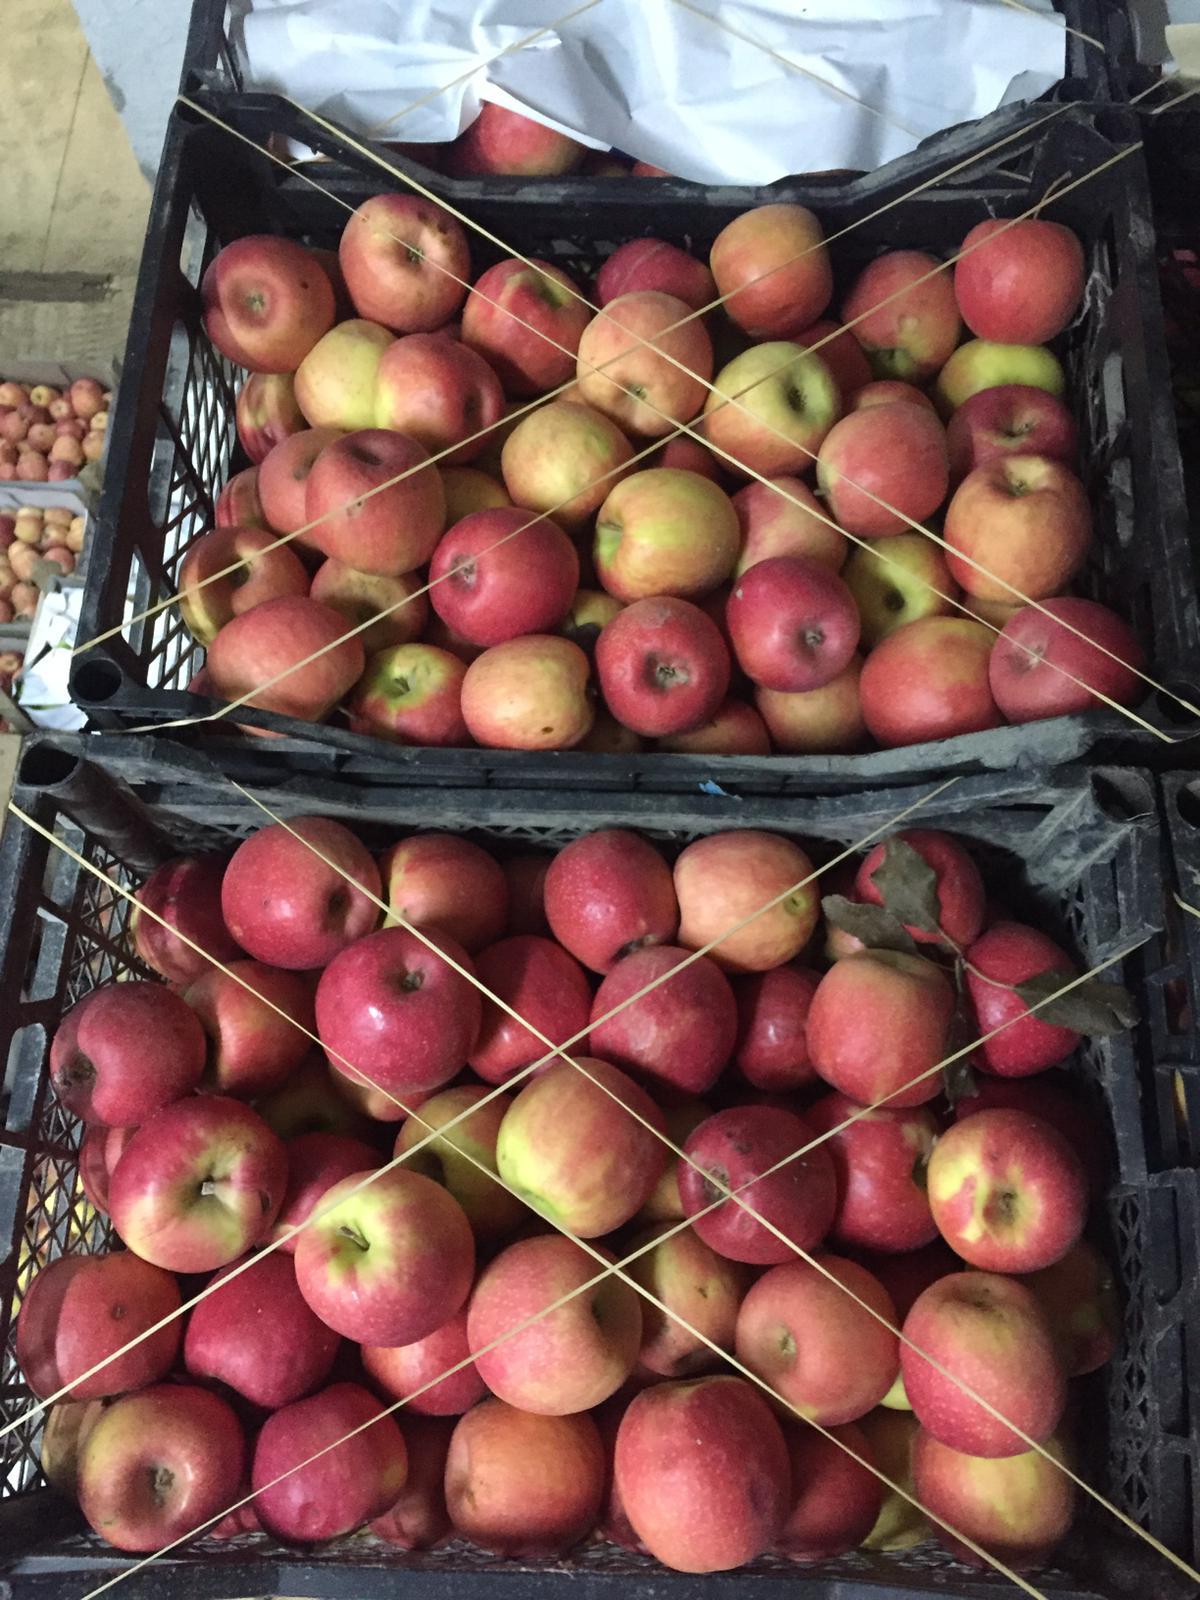 Elma - Pink Lady tarafından verilen satılık pınk lady çeşidi elma  ilanını ve diğer satılık elma ilanlarını tarimziraat.com adresinde bulabilirsiniz